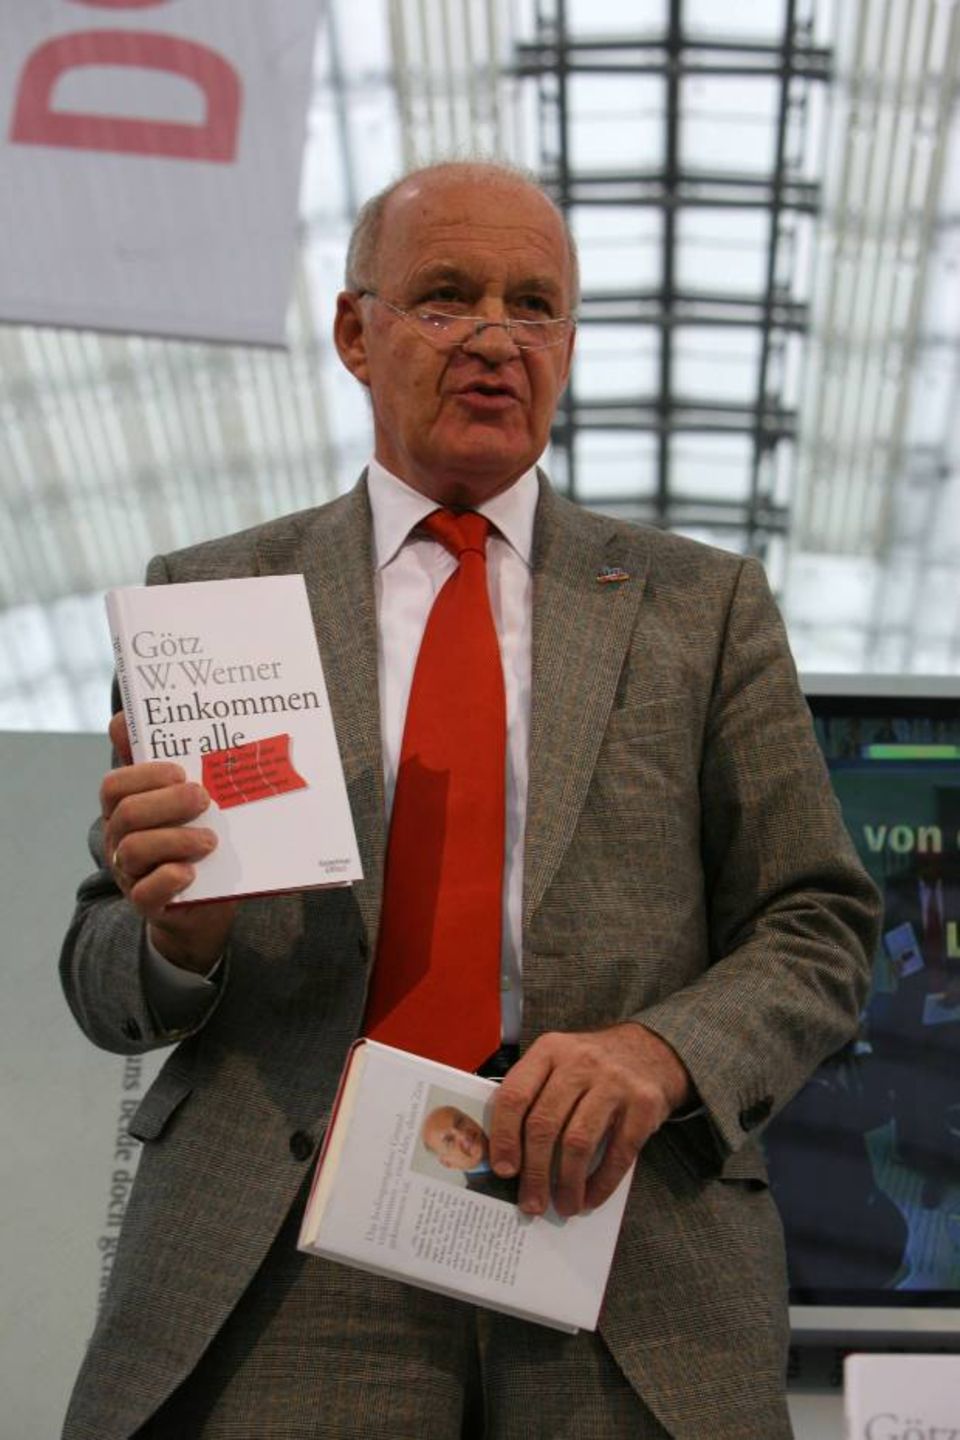 2007 stellte Werner sein Buch "Einkommen für alle" vor